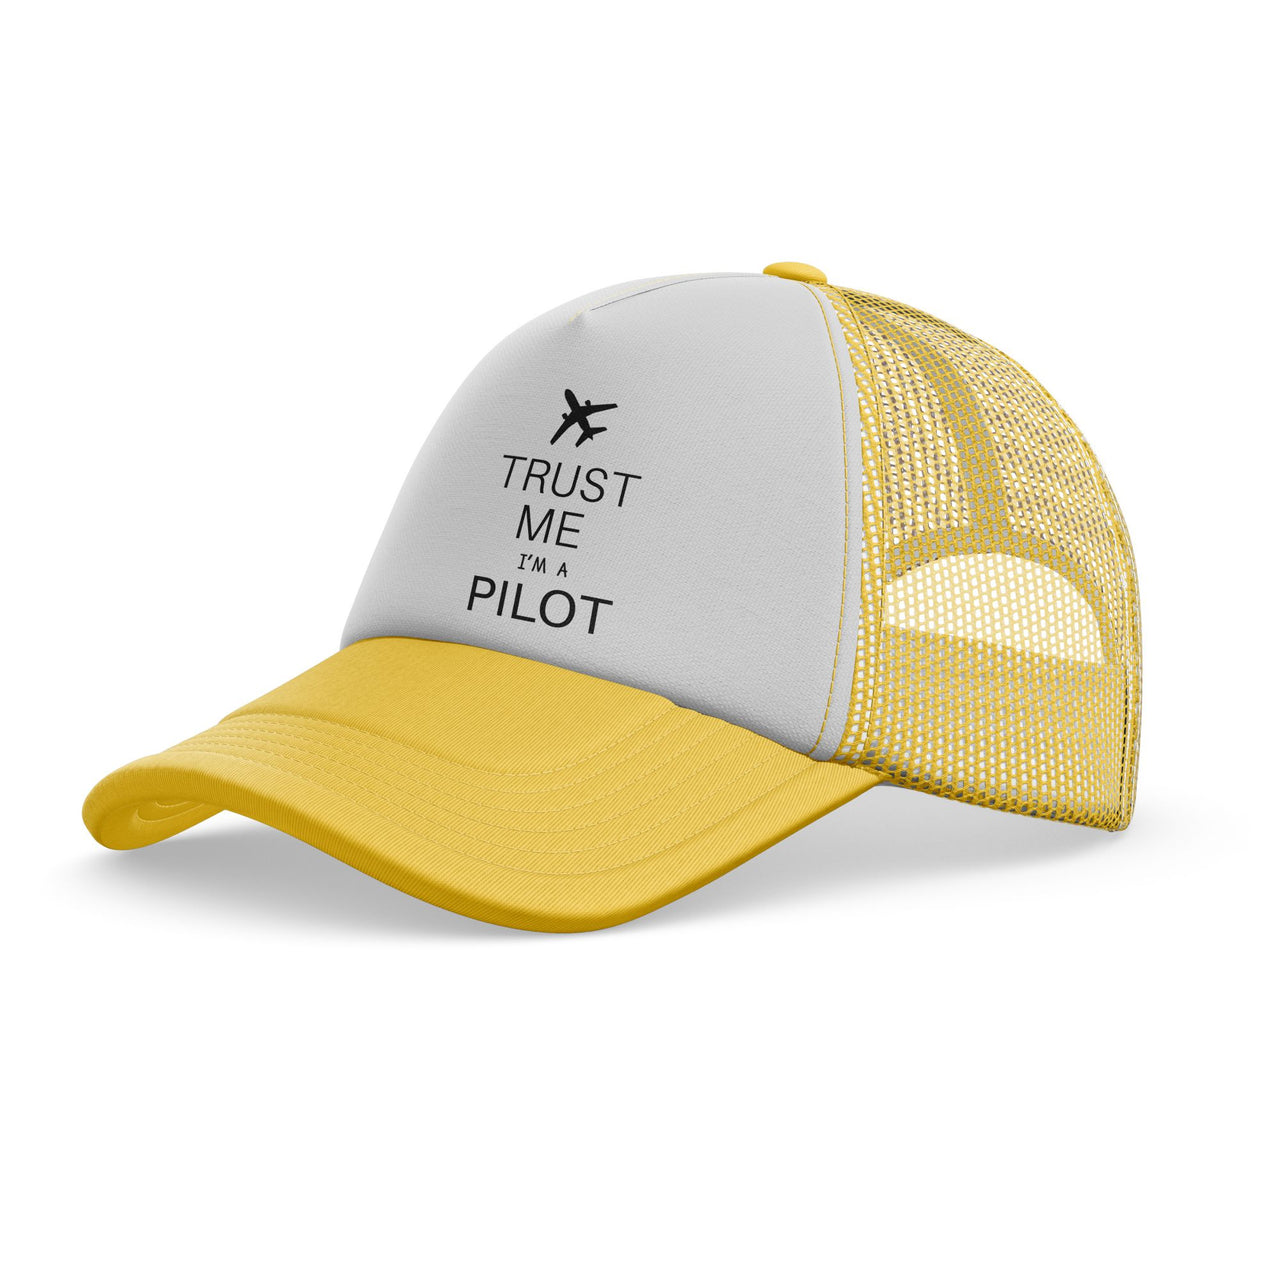 Trust Me I'm a Pilot 2 Designed Trucker Caps & Hats